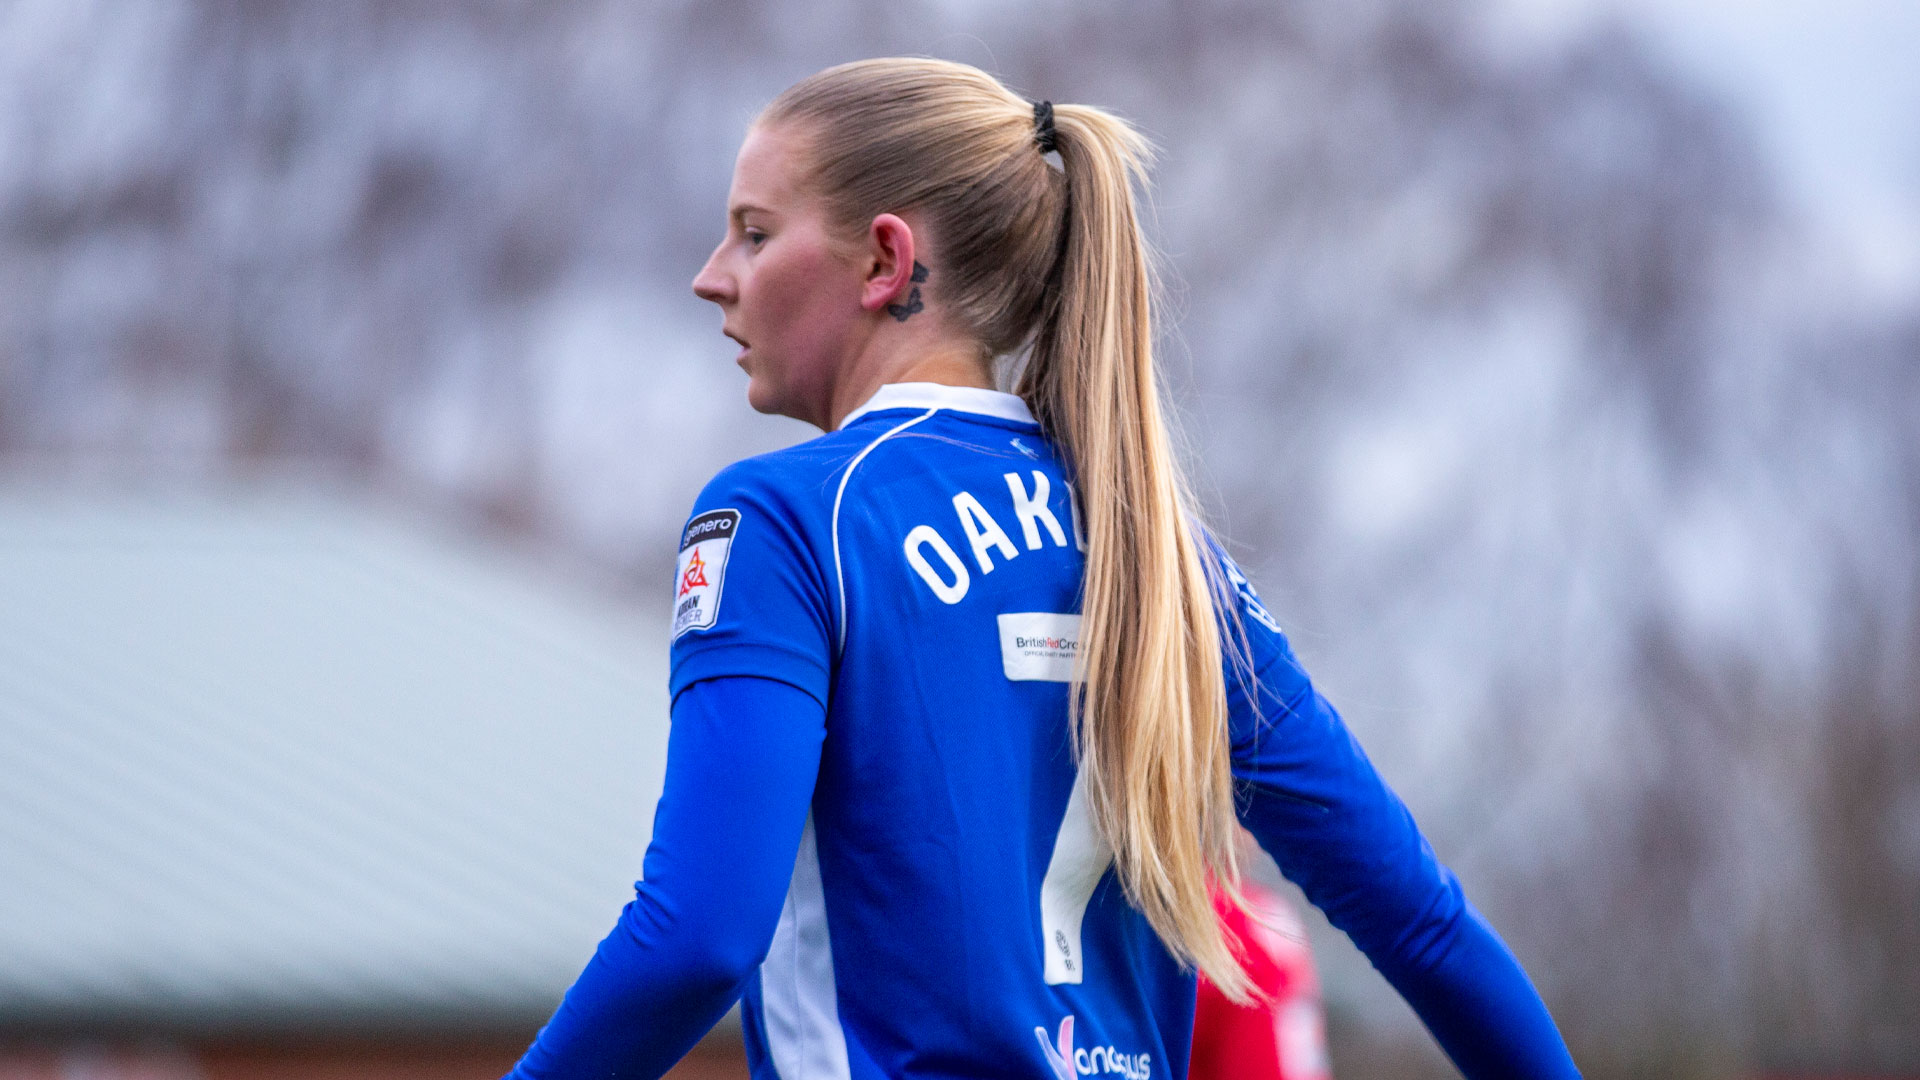 Rhianne Oakley in action for Cardiff City Women